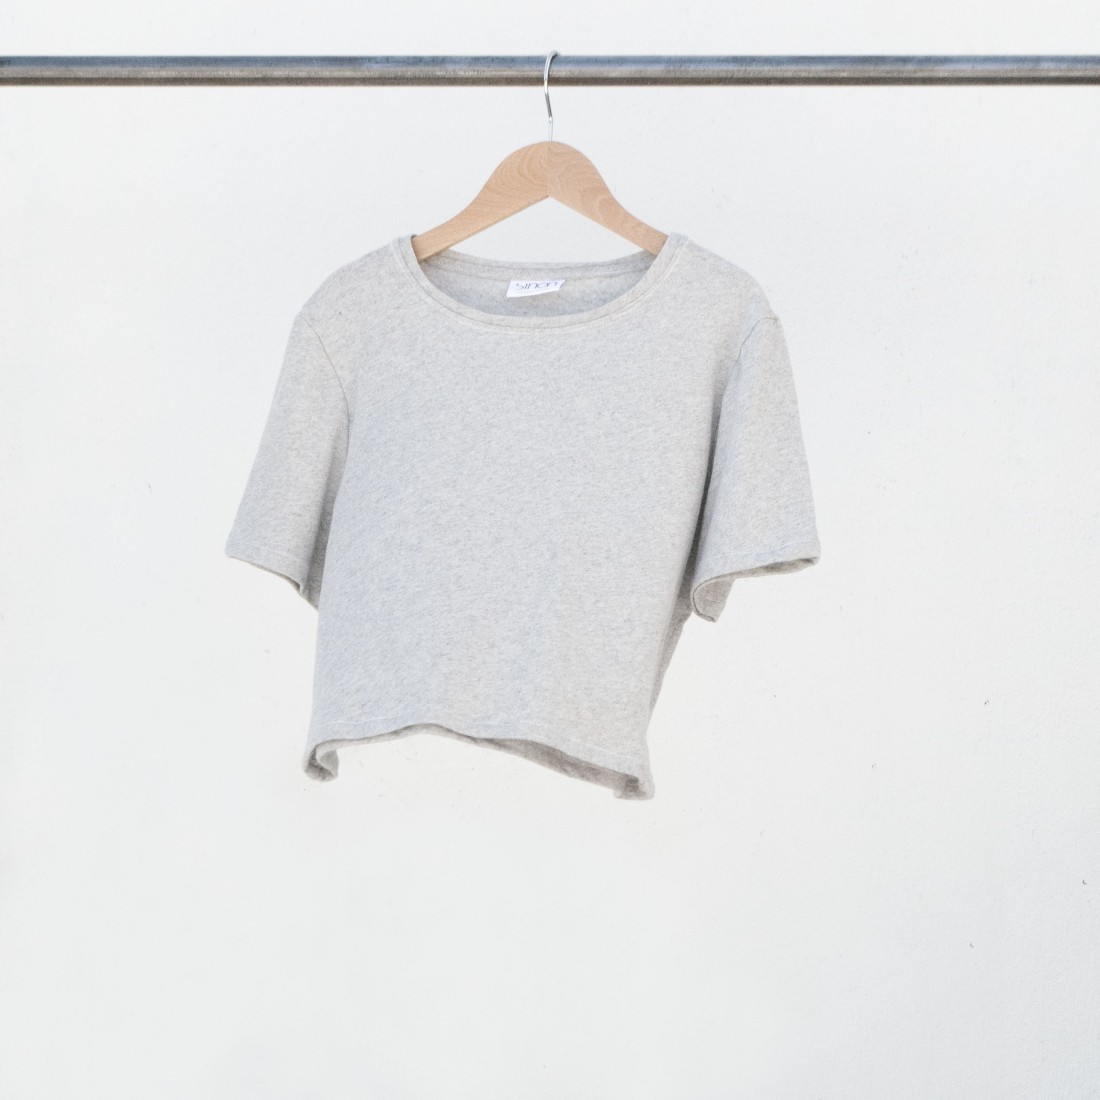 Tee-shirt crop top femme col rond en coton recyclé gris chiné. Fabriqué en France